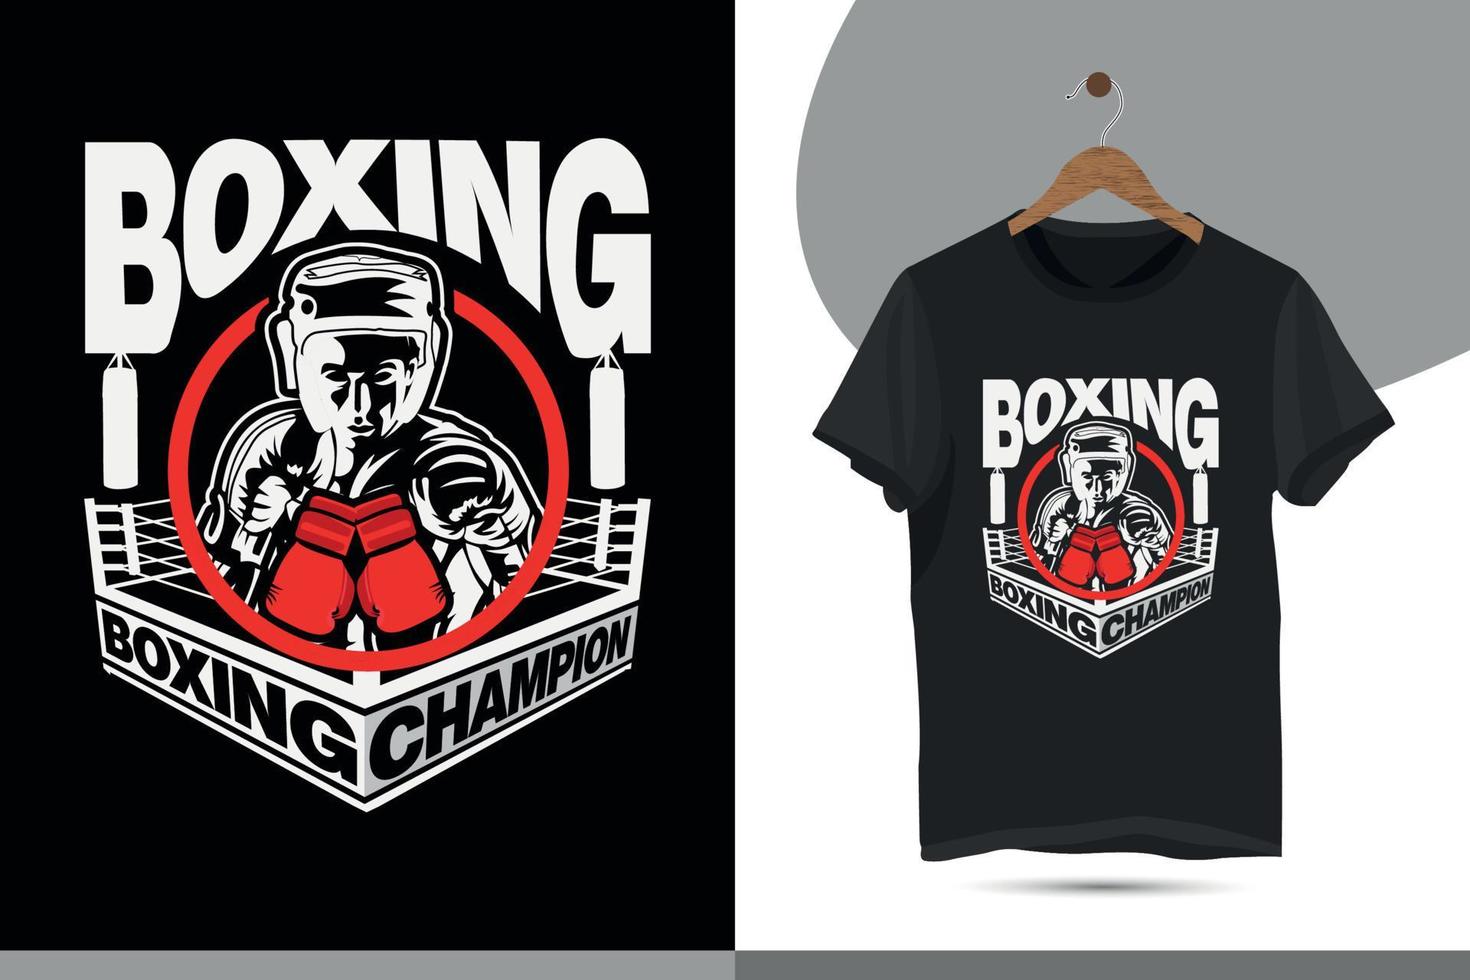 boxeo, campeón de boxeo: diseño de camisetas de boxeo para los del boxeo. plantilla de diseño de camiseta de vector de tipografía para imprimir. 15237744 Vector en Vecteezy